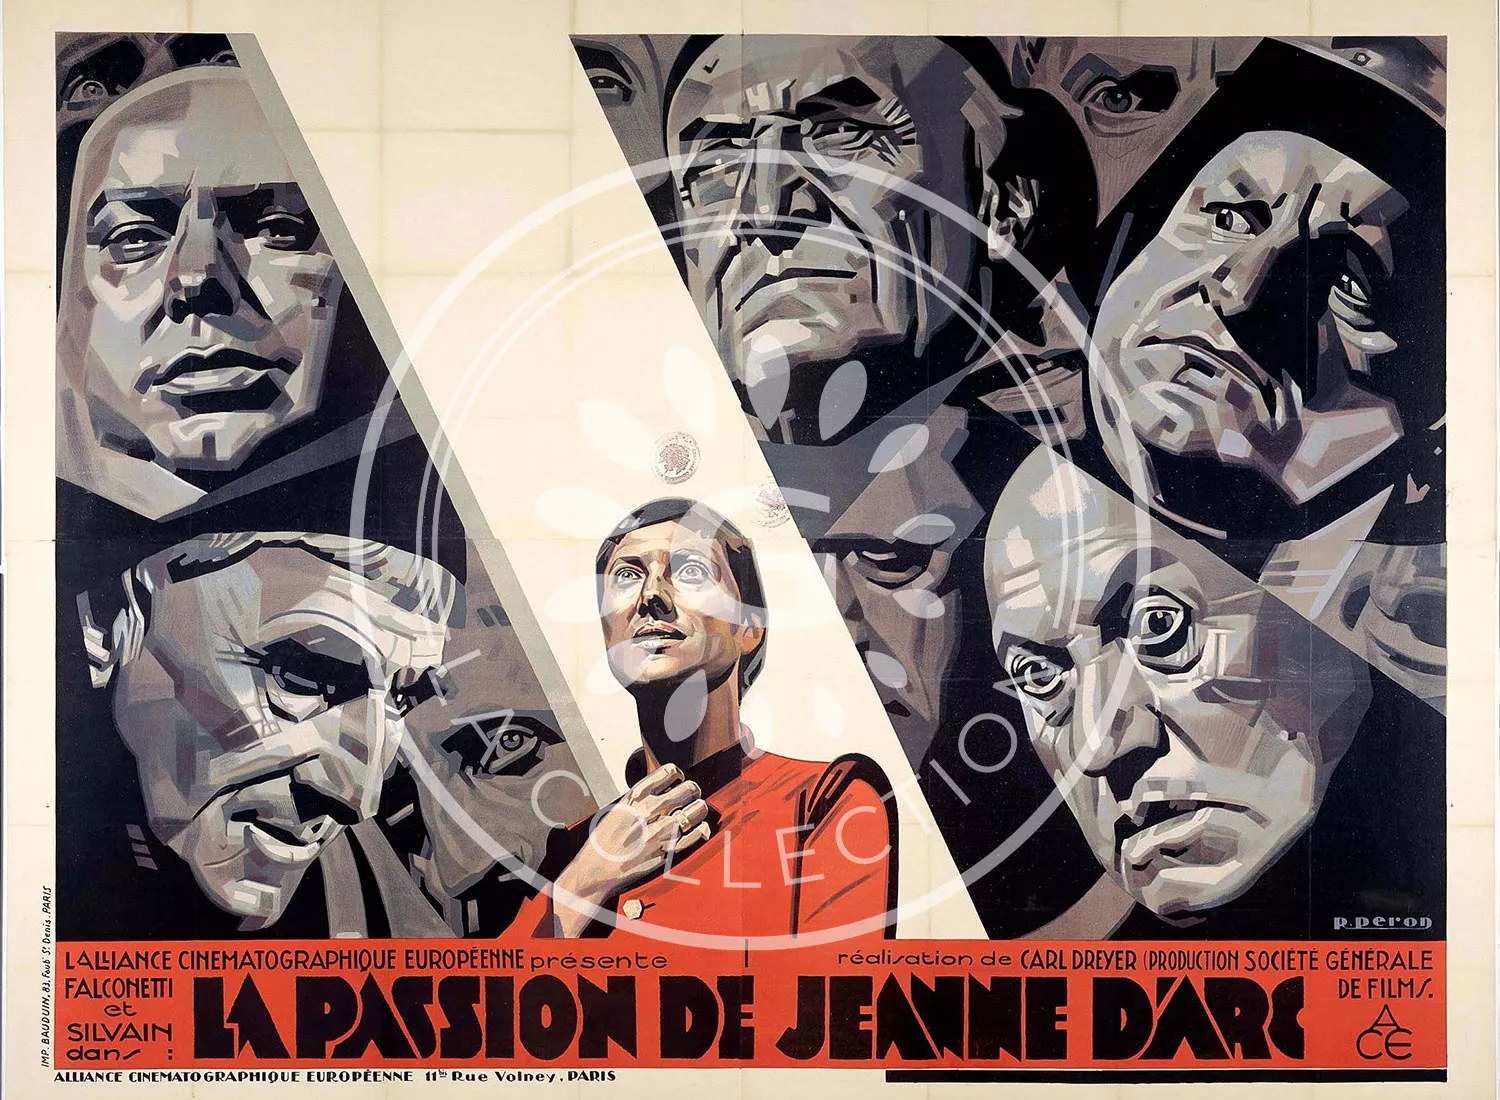 LA PASSION DE JEANNE D'ARC. Carl Theodor Dreyer